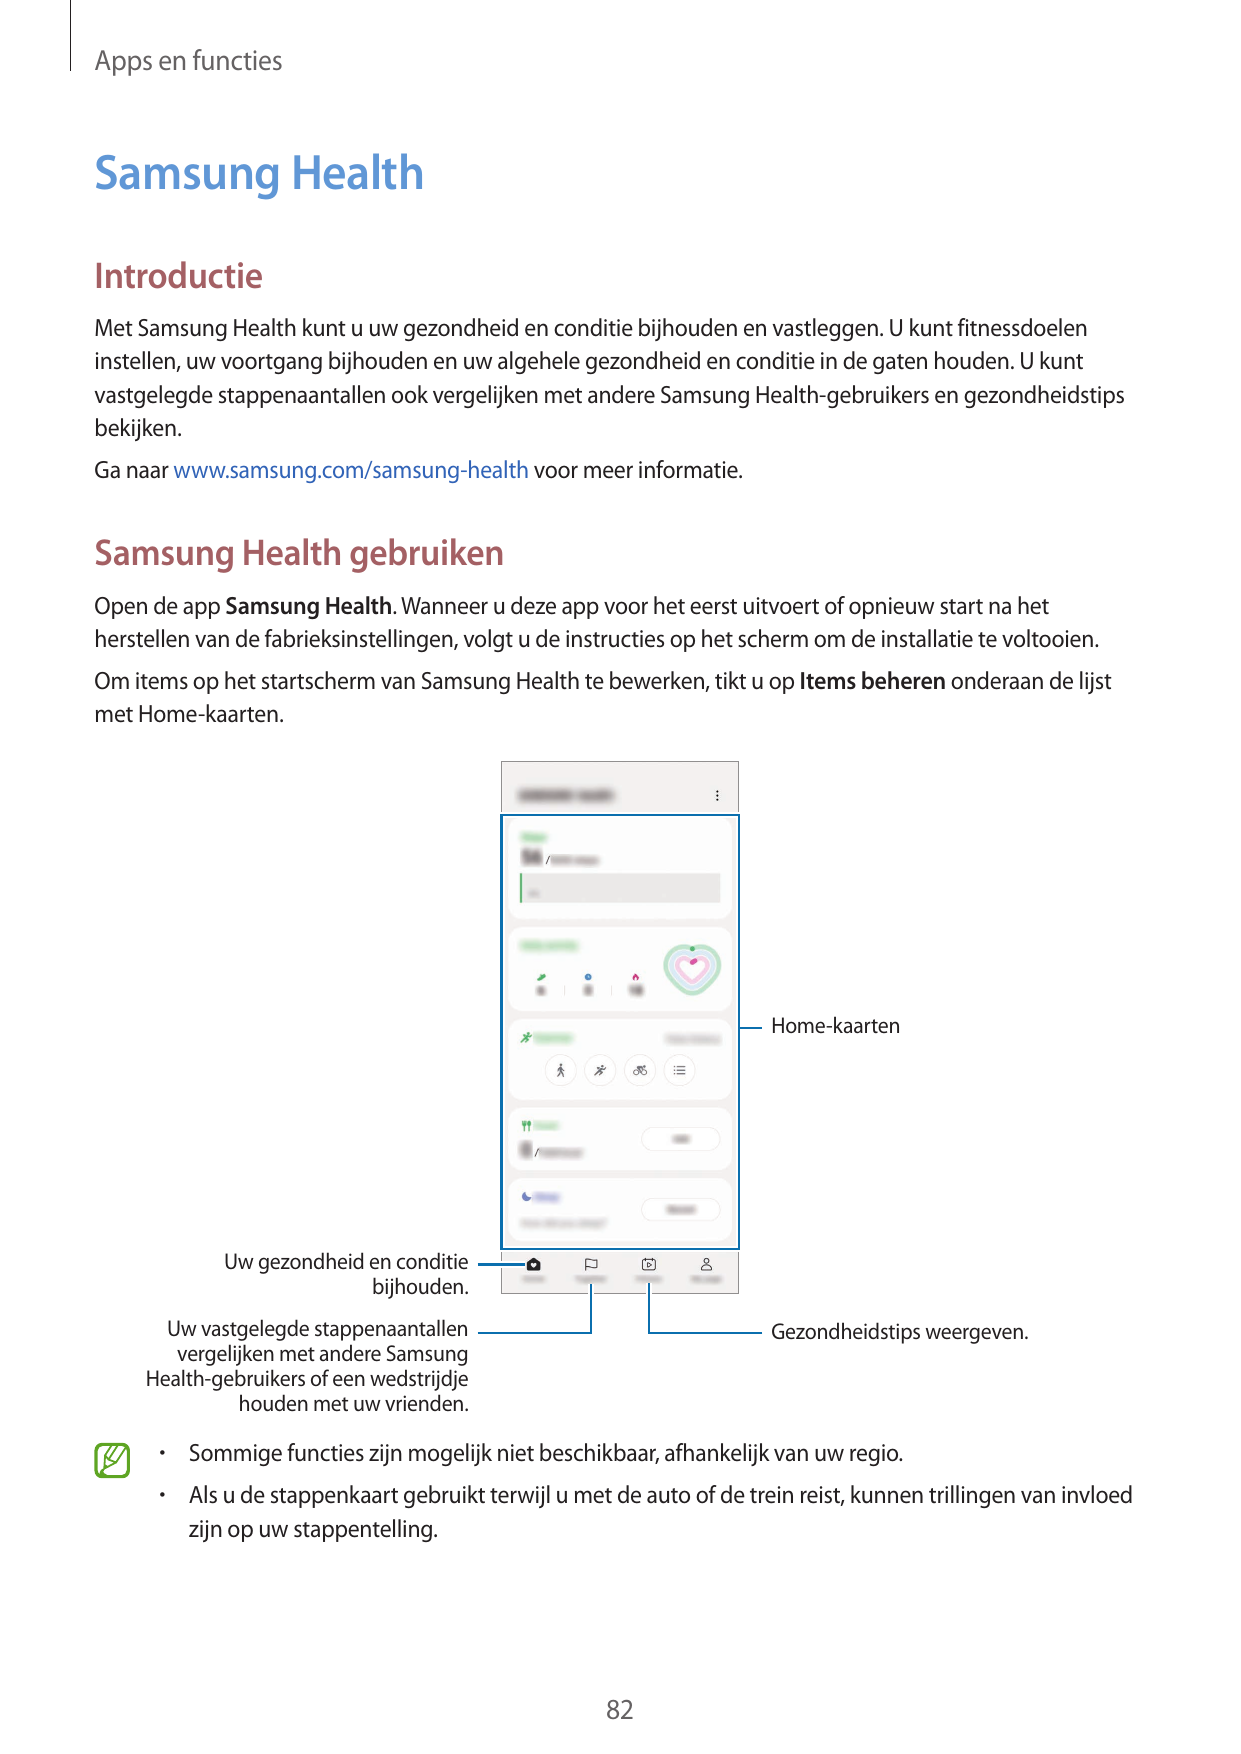 Apps en functiesSamsung HealthIntroductieMet Samsung Health kunt u uw gezondheid en conditie bijhouden en vastleggen. U kunt fit